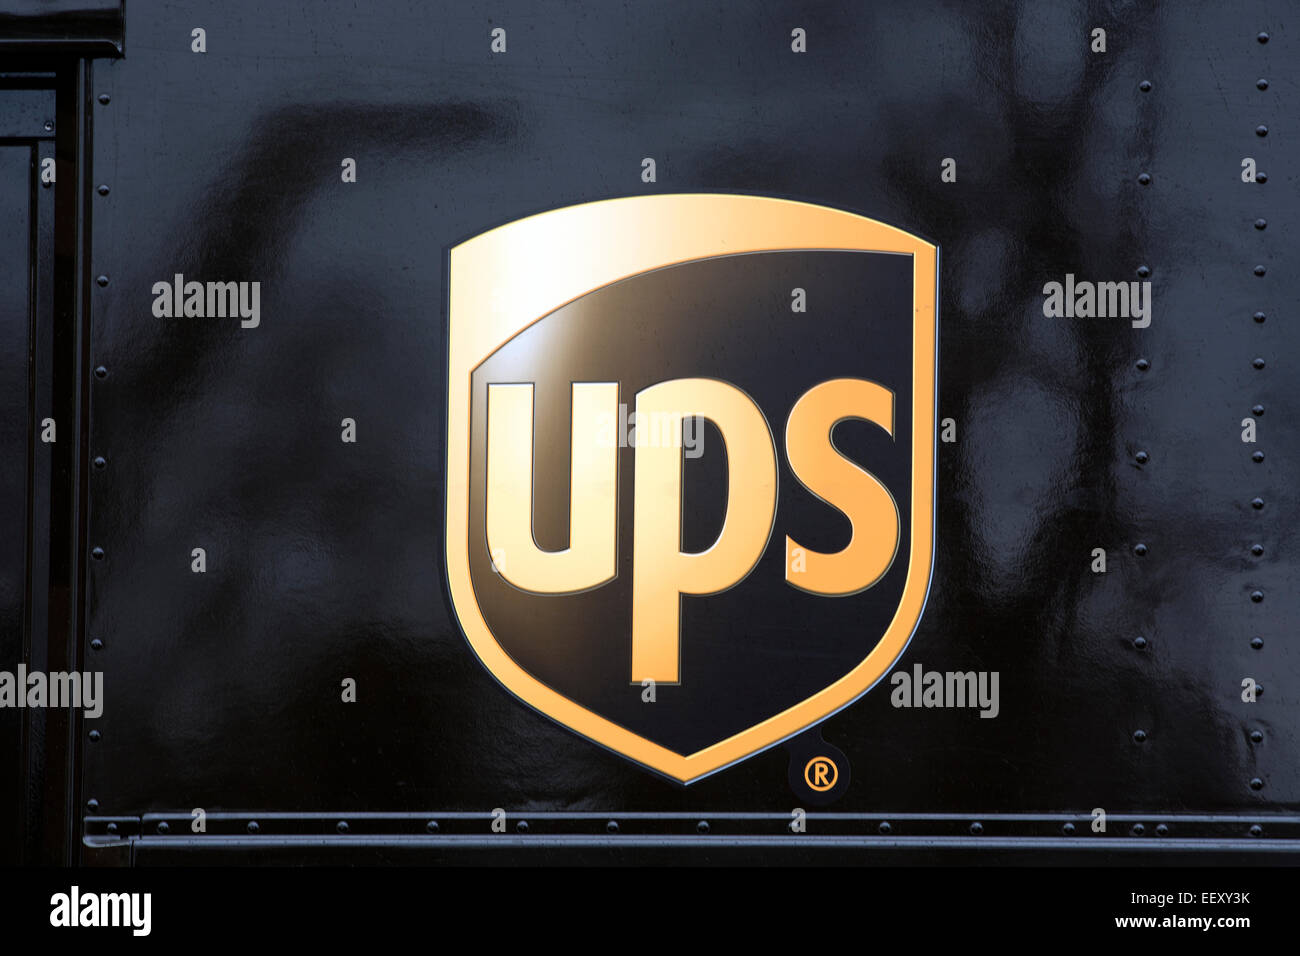 Logo auf einer UPS Pakete Lieferwagen Stockfoto